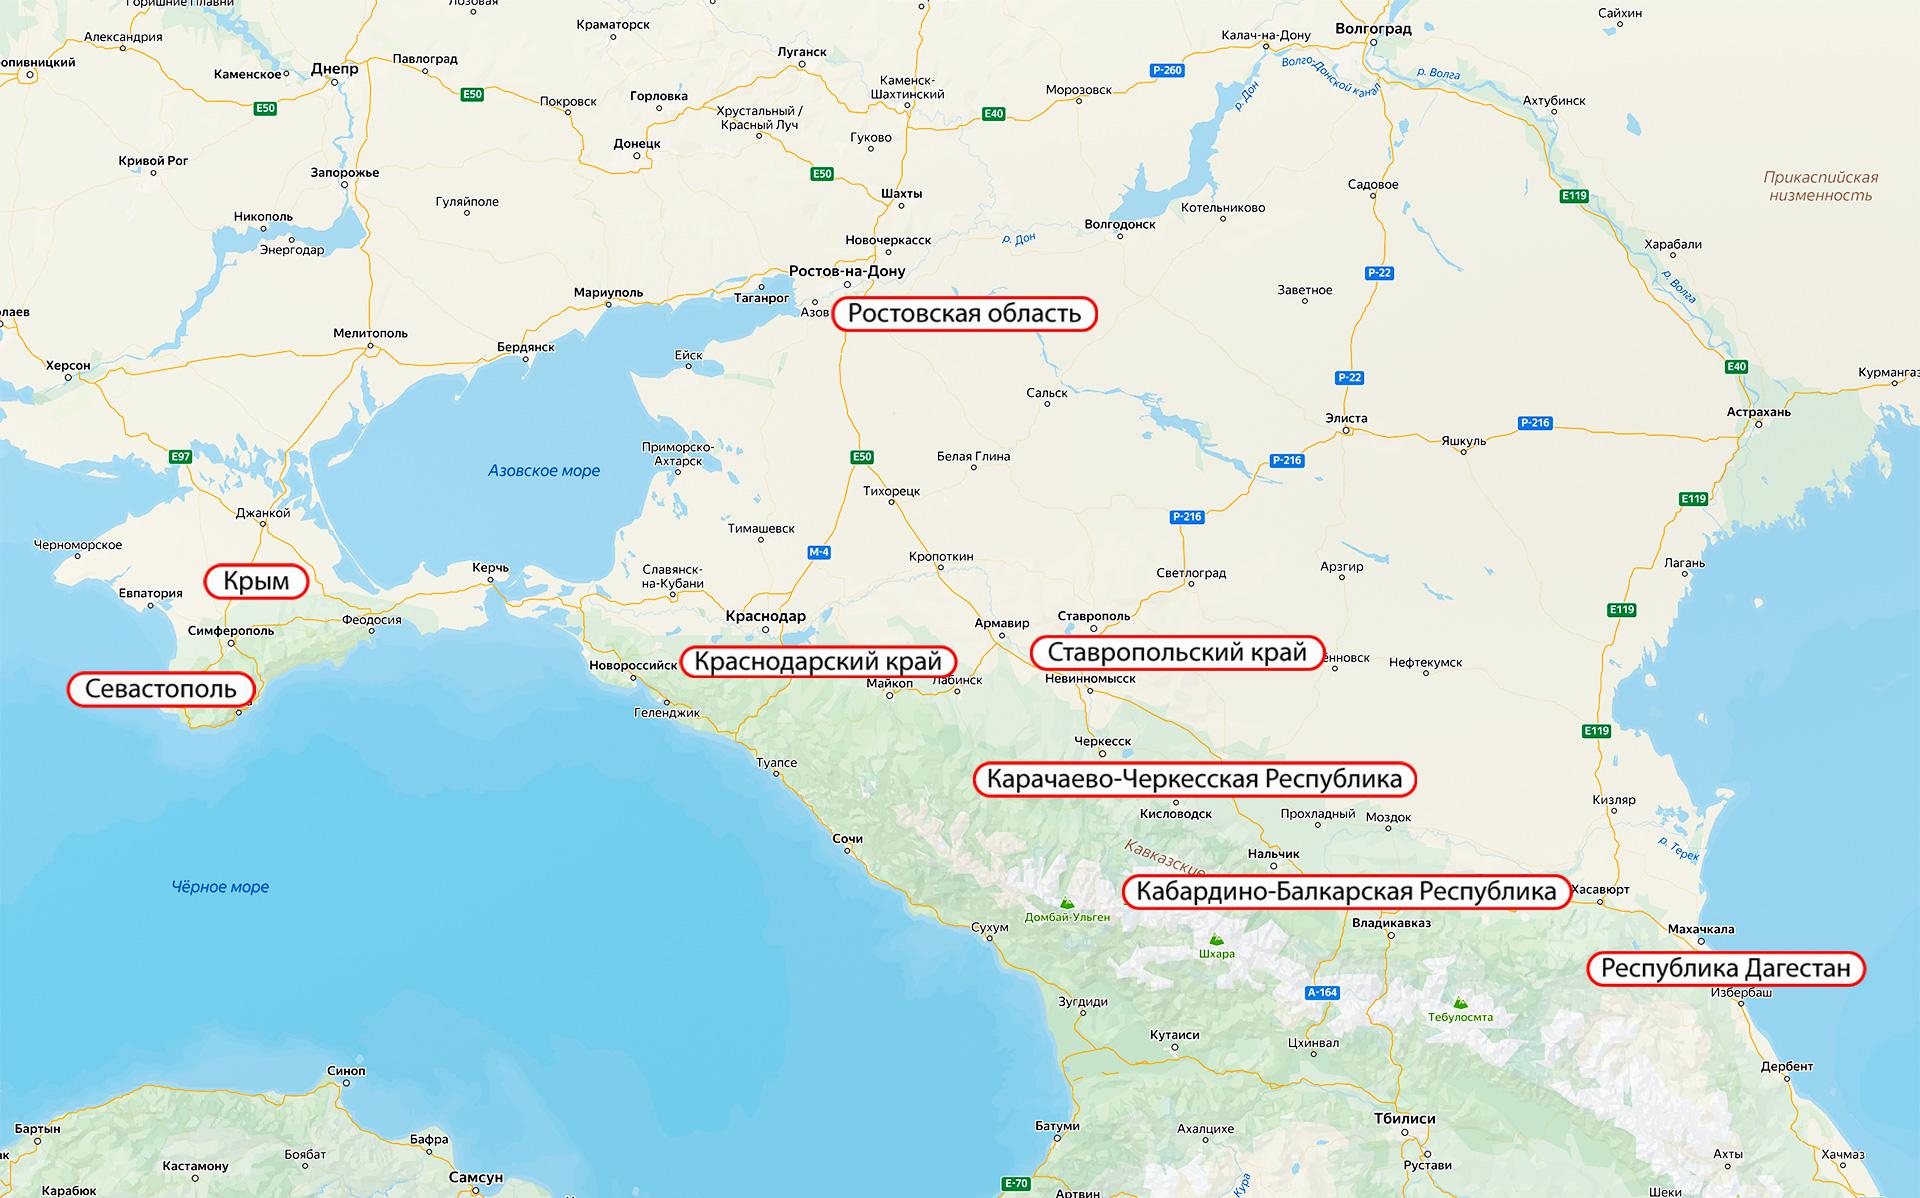 Сбой на Ростовской АЭС вызвал проблемы с электричеством в семи регионах